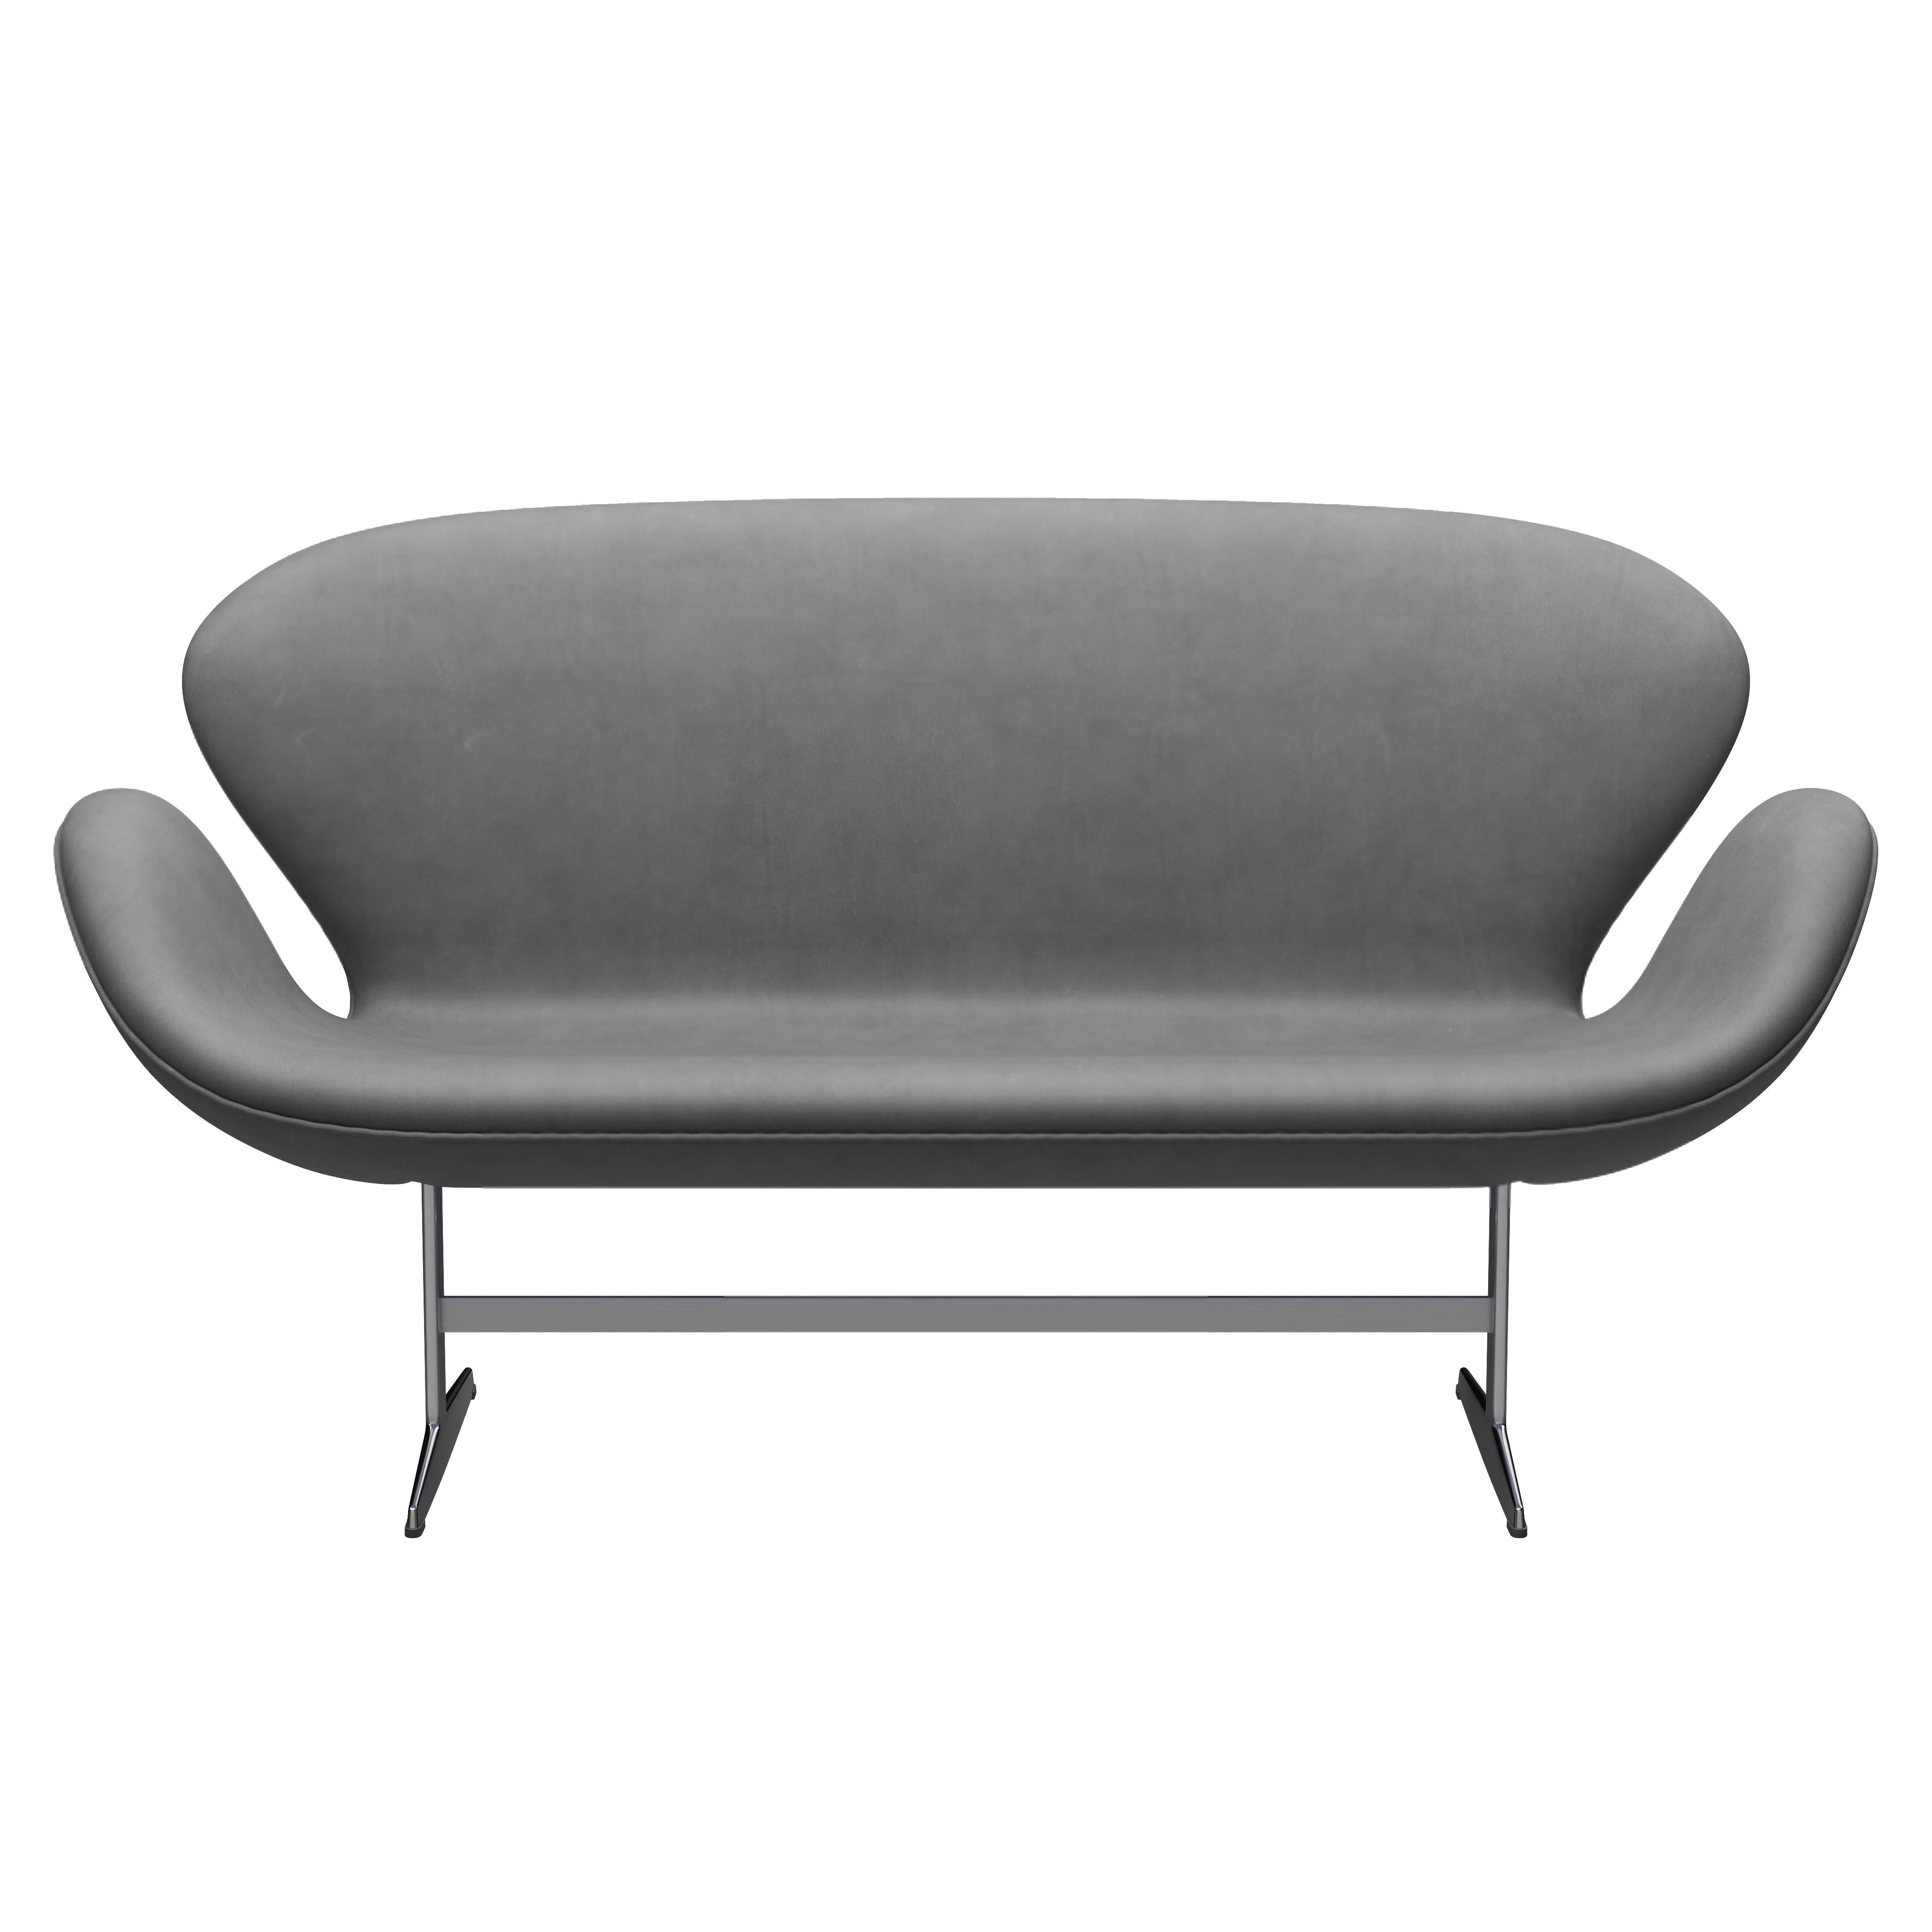 Arne Jacobsen 'Swan' Sofa for Fritz Hansen in Leather Upholstery (Cat. 5) For Sale 3